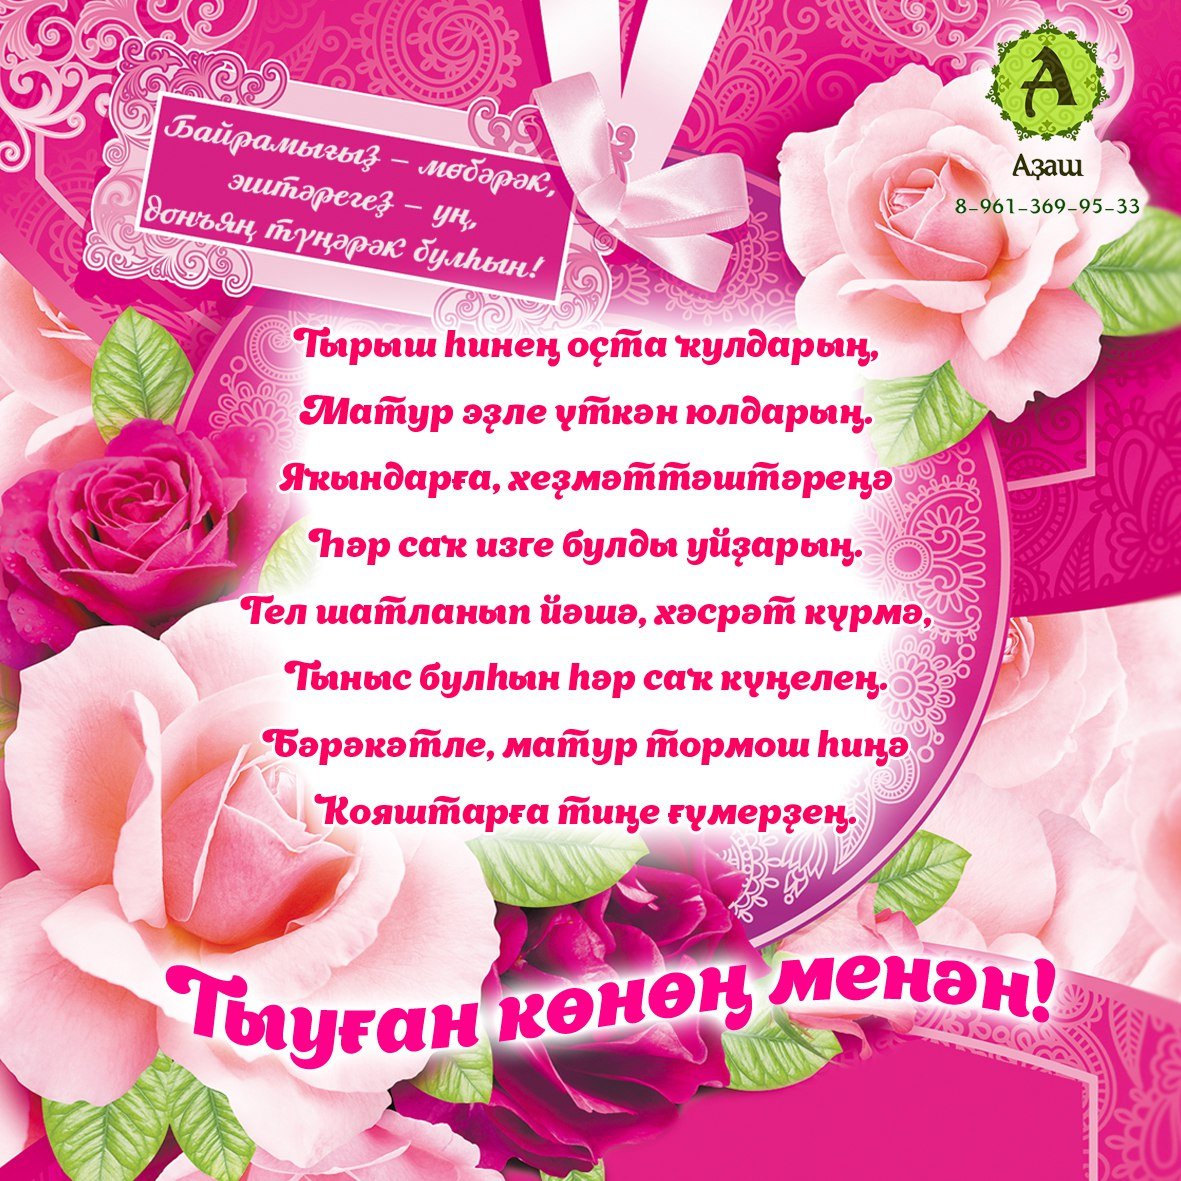 Открытки для женщины на татарском. Поздравления с днём рождения на башкирском. Поздравление с юбилеем на башкирском. Поздравления с днём рождения на башкирском языке. Поздравления с днём рождения маме на башкирском языке.